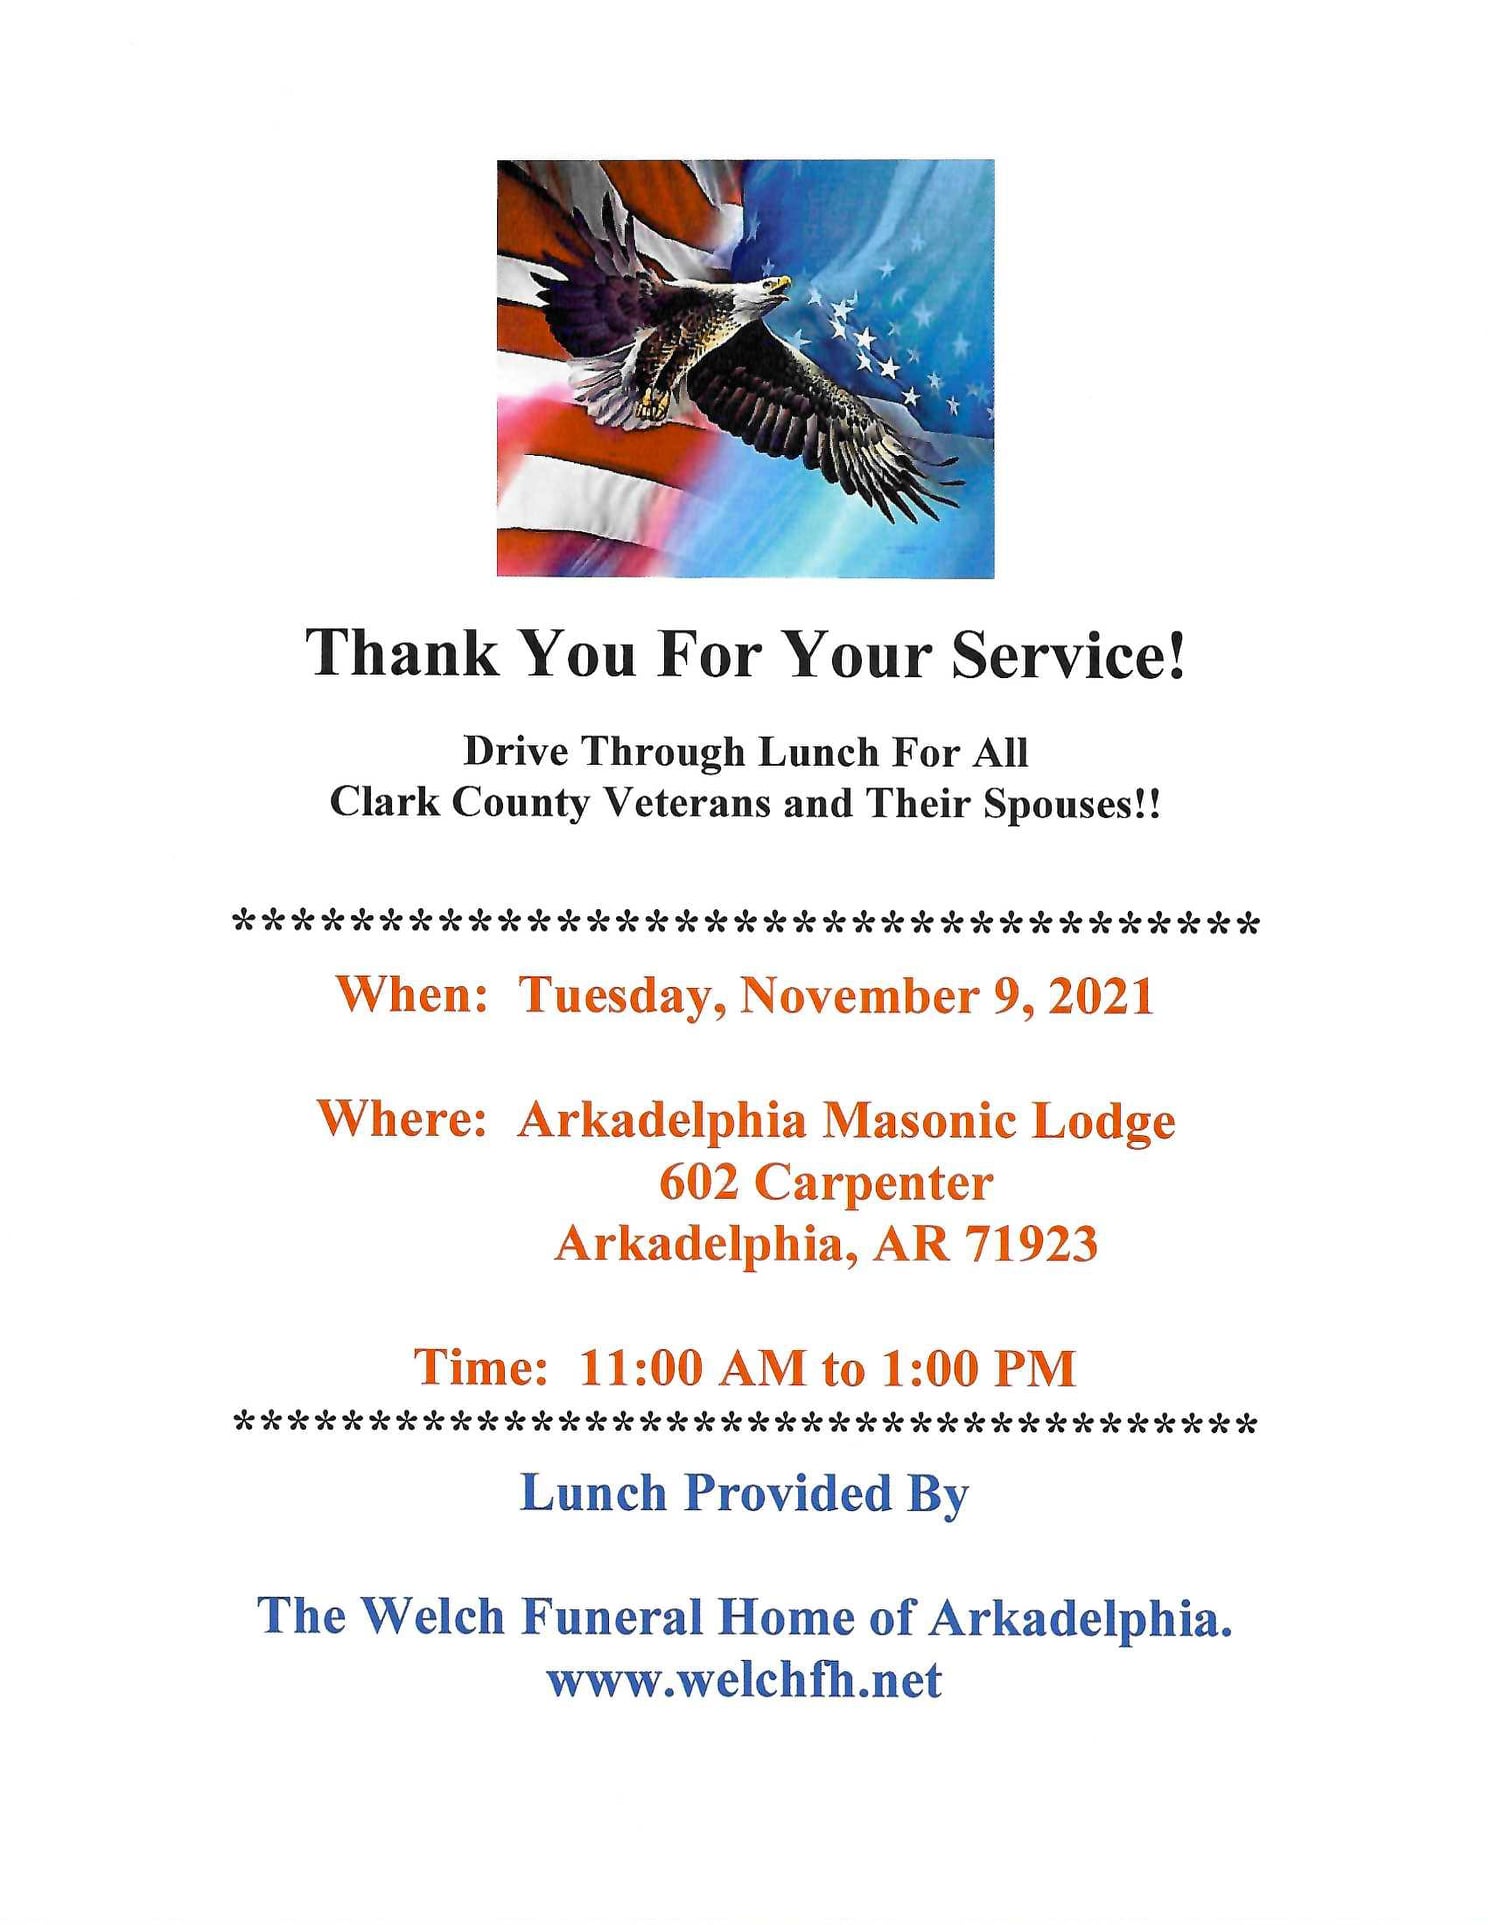 Welch Funeral Home 202 S 4th St, Arkadelphia Arkansas 71923